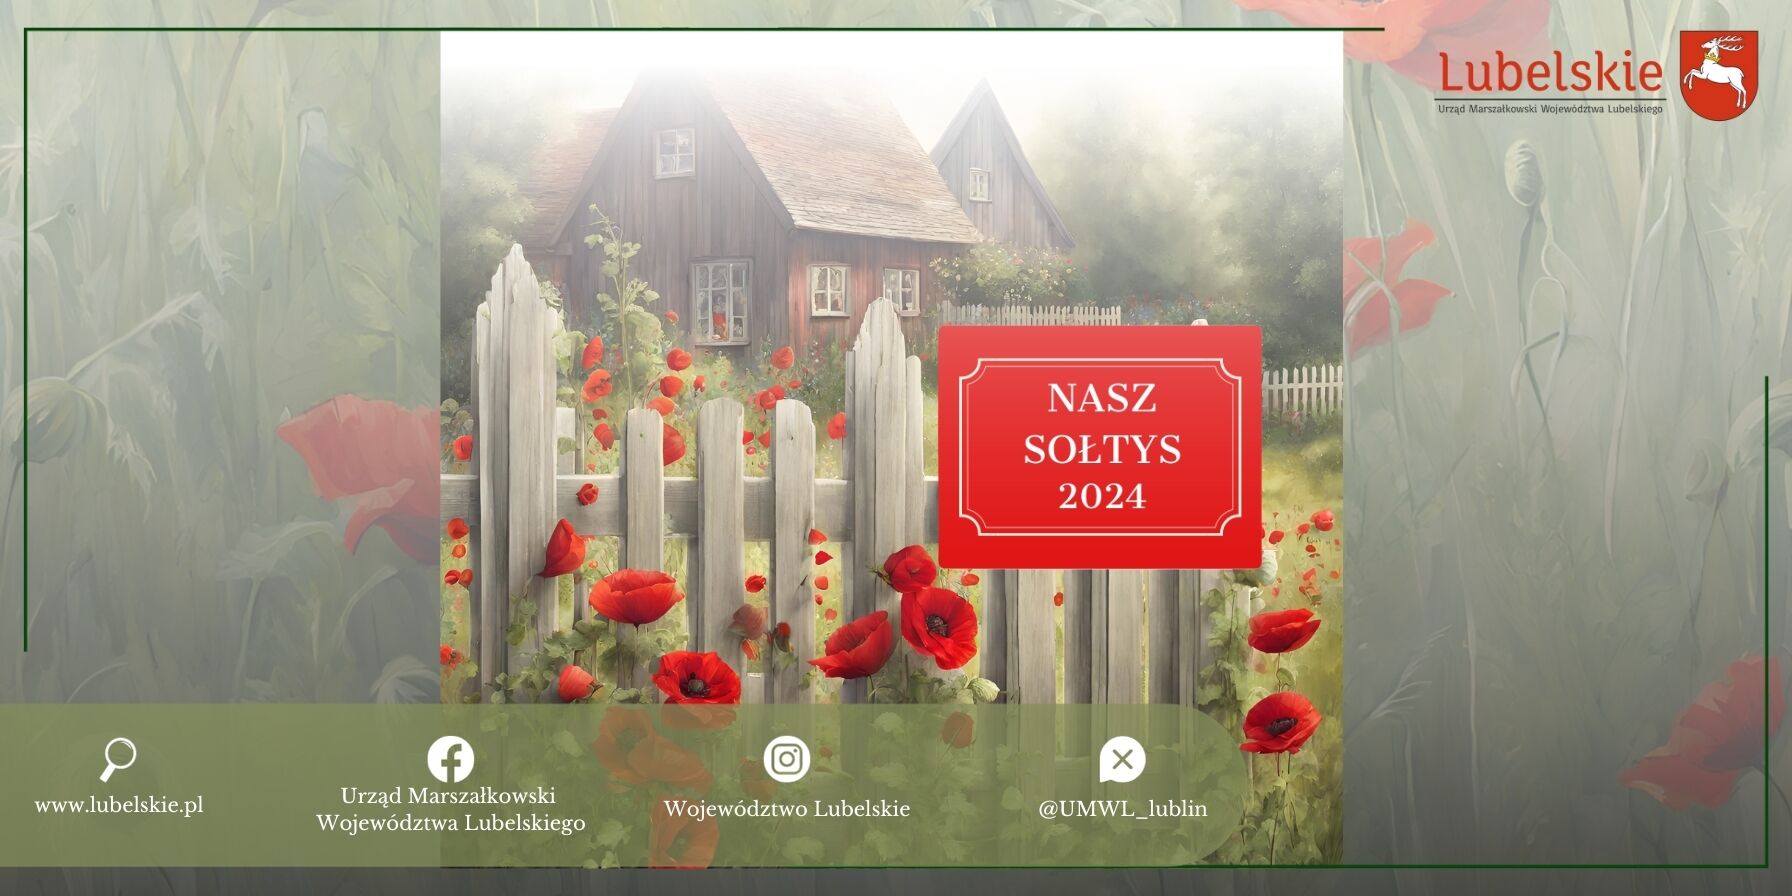 Grafika promocyjna z napisem "NASZ SOŁTYS 2024" przedstawia idylliczny wiejski krajobraz z drewnianym domem, płotem i czerwonymi makami.